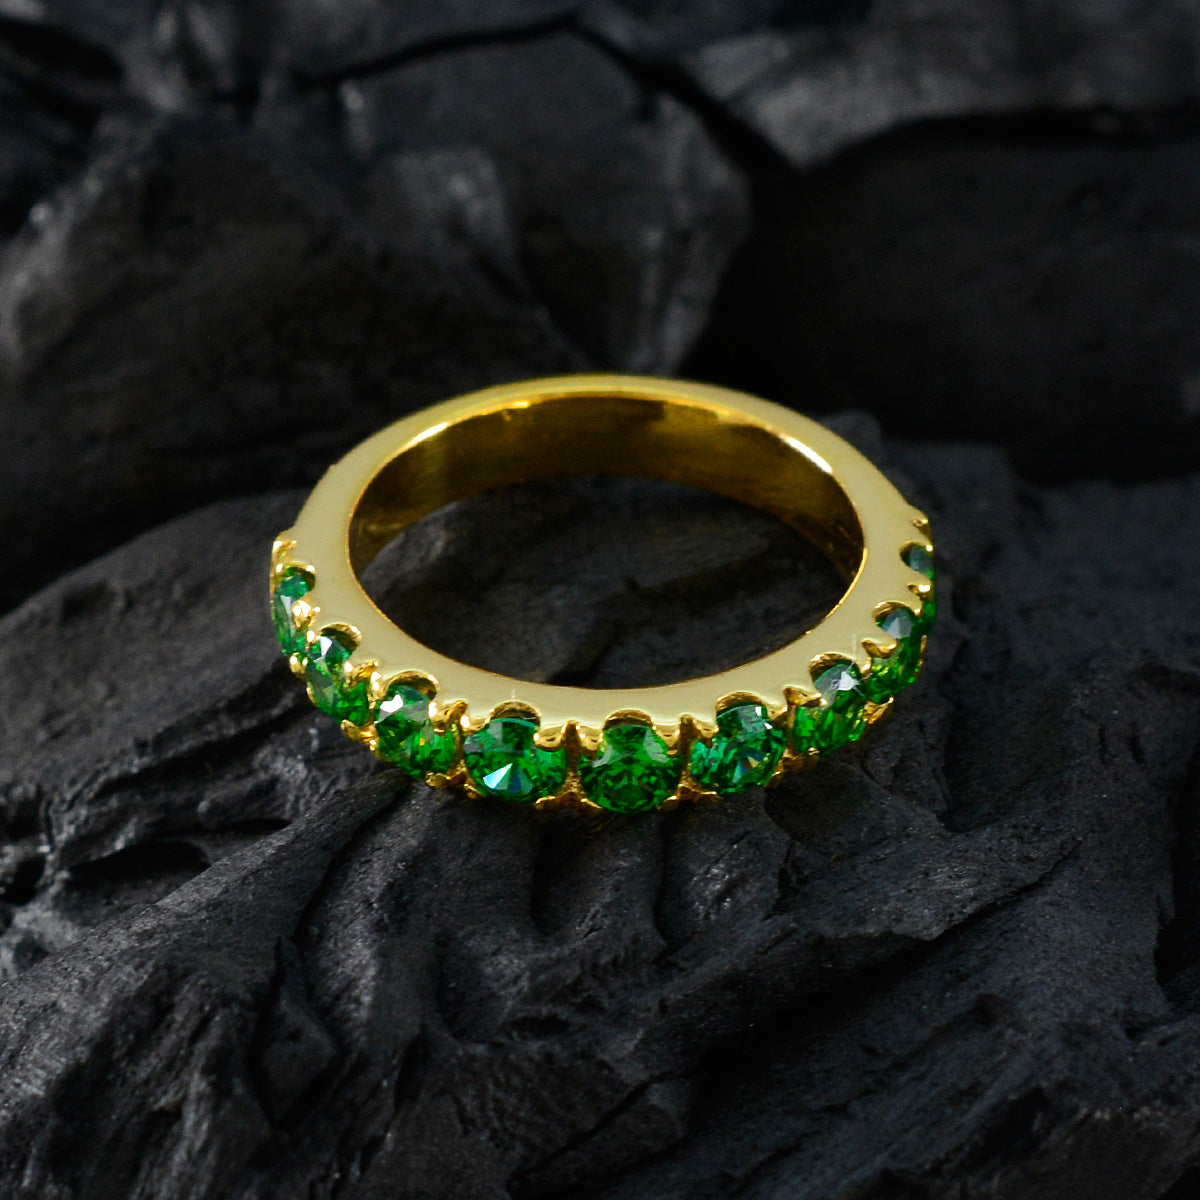 Riyo encantador anillo de plata con chapado en oro amarillo Esmeralda cz piedra forma redonda ajuste de punta joyería de moda anillo de cóctel